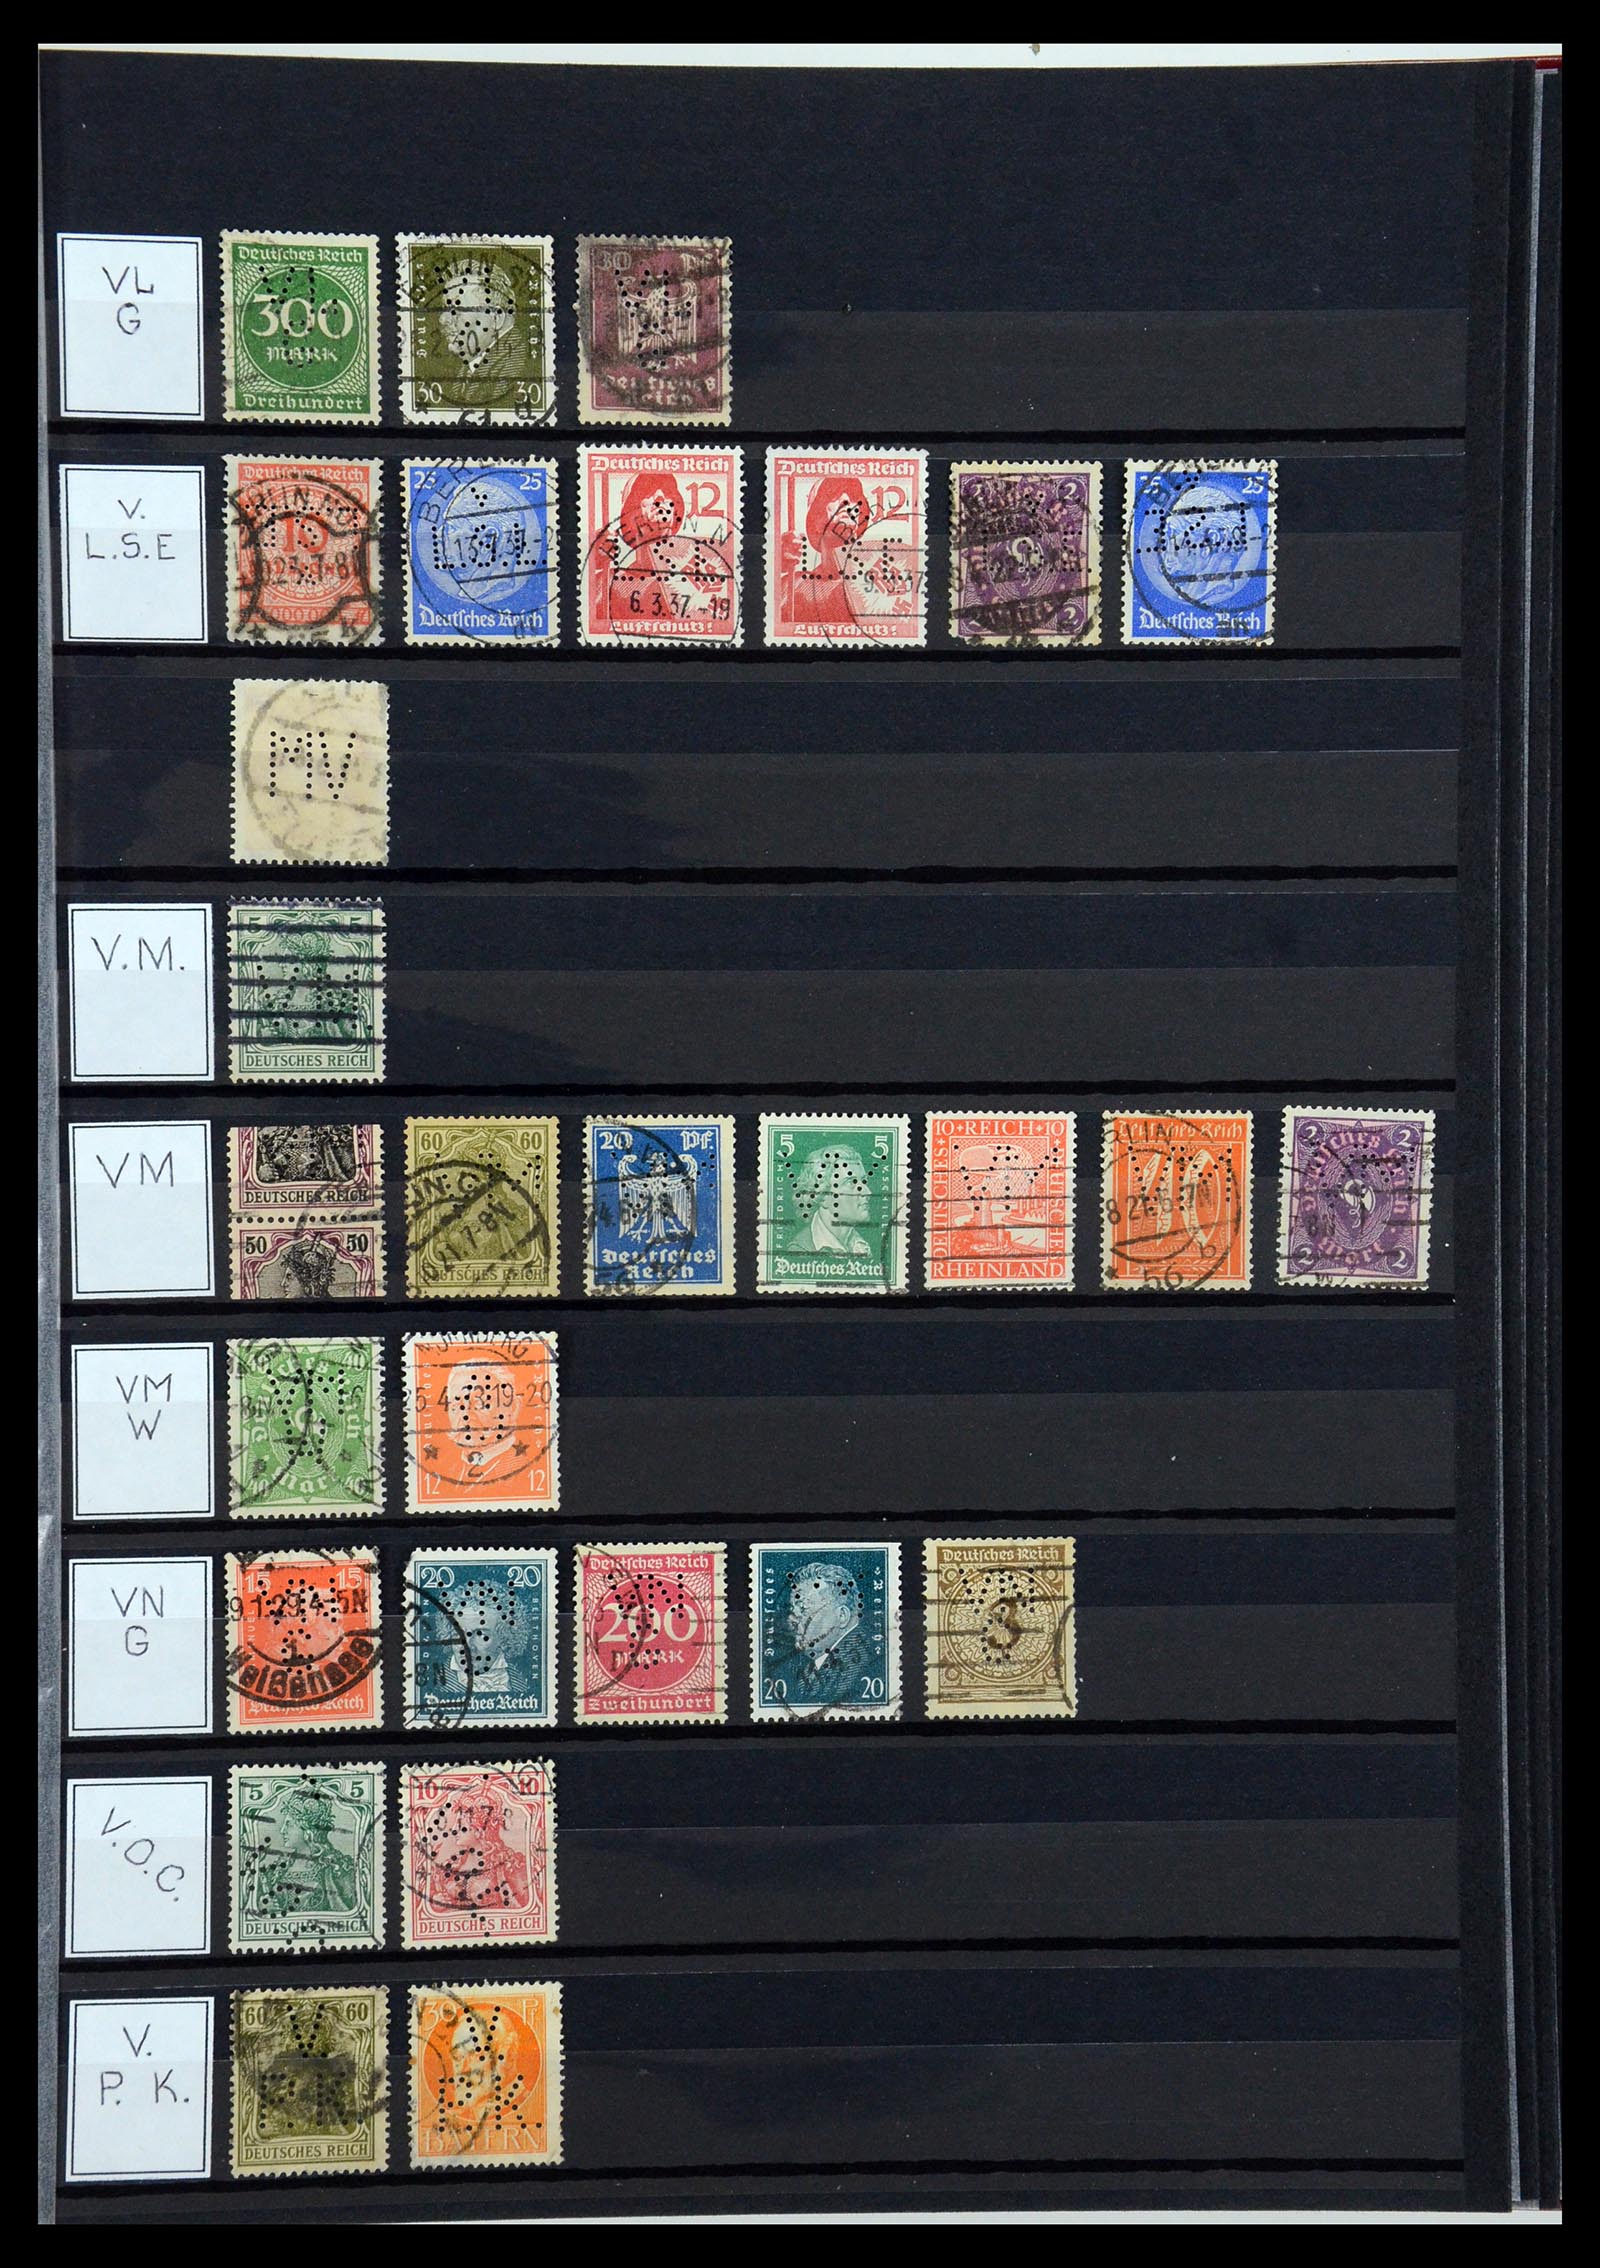 36405 330 - Stamp collection 36405 German Reich perfins 1880-1945.